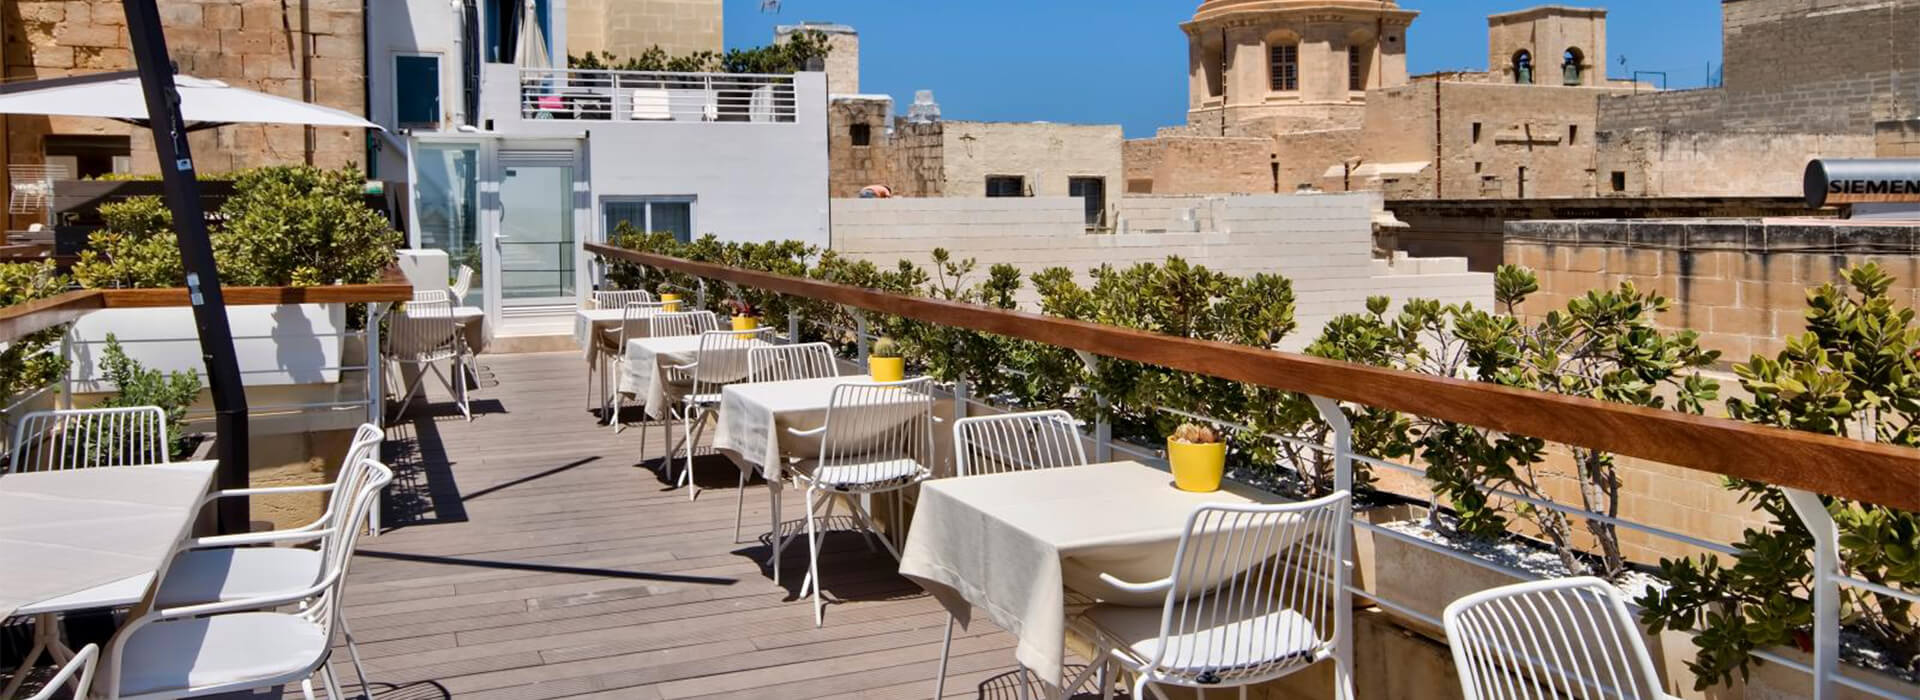 Pedrali en el Hotel Ursulino de Malta